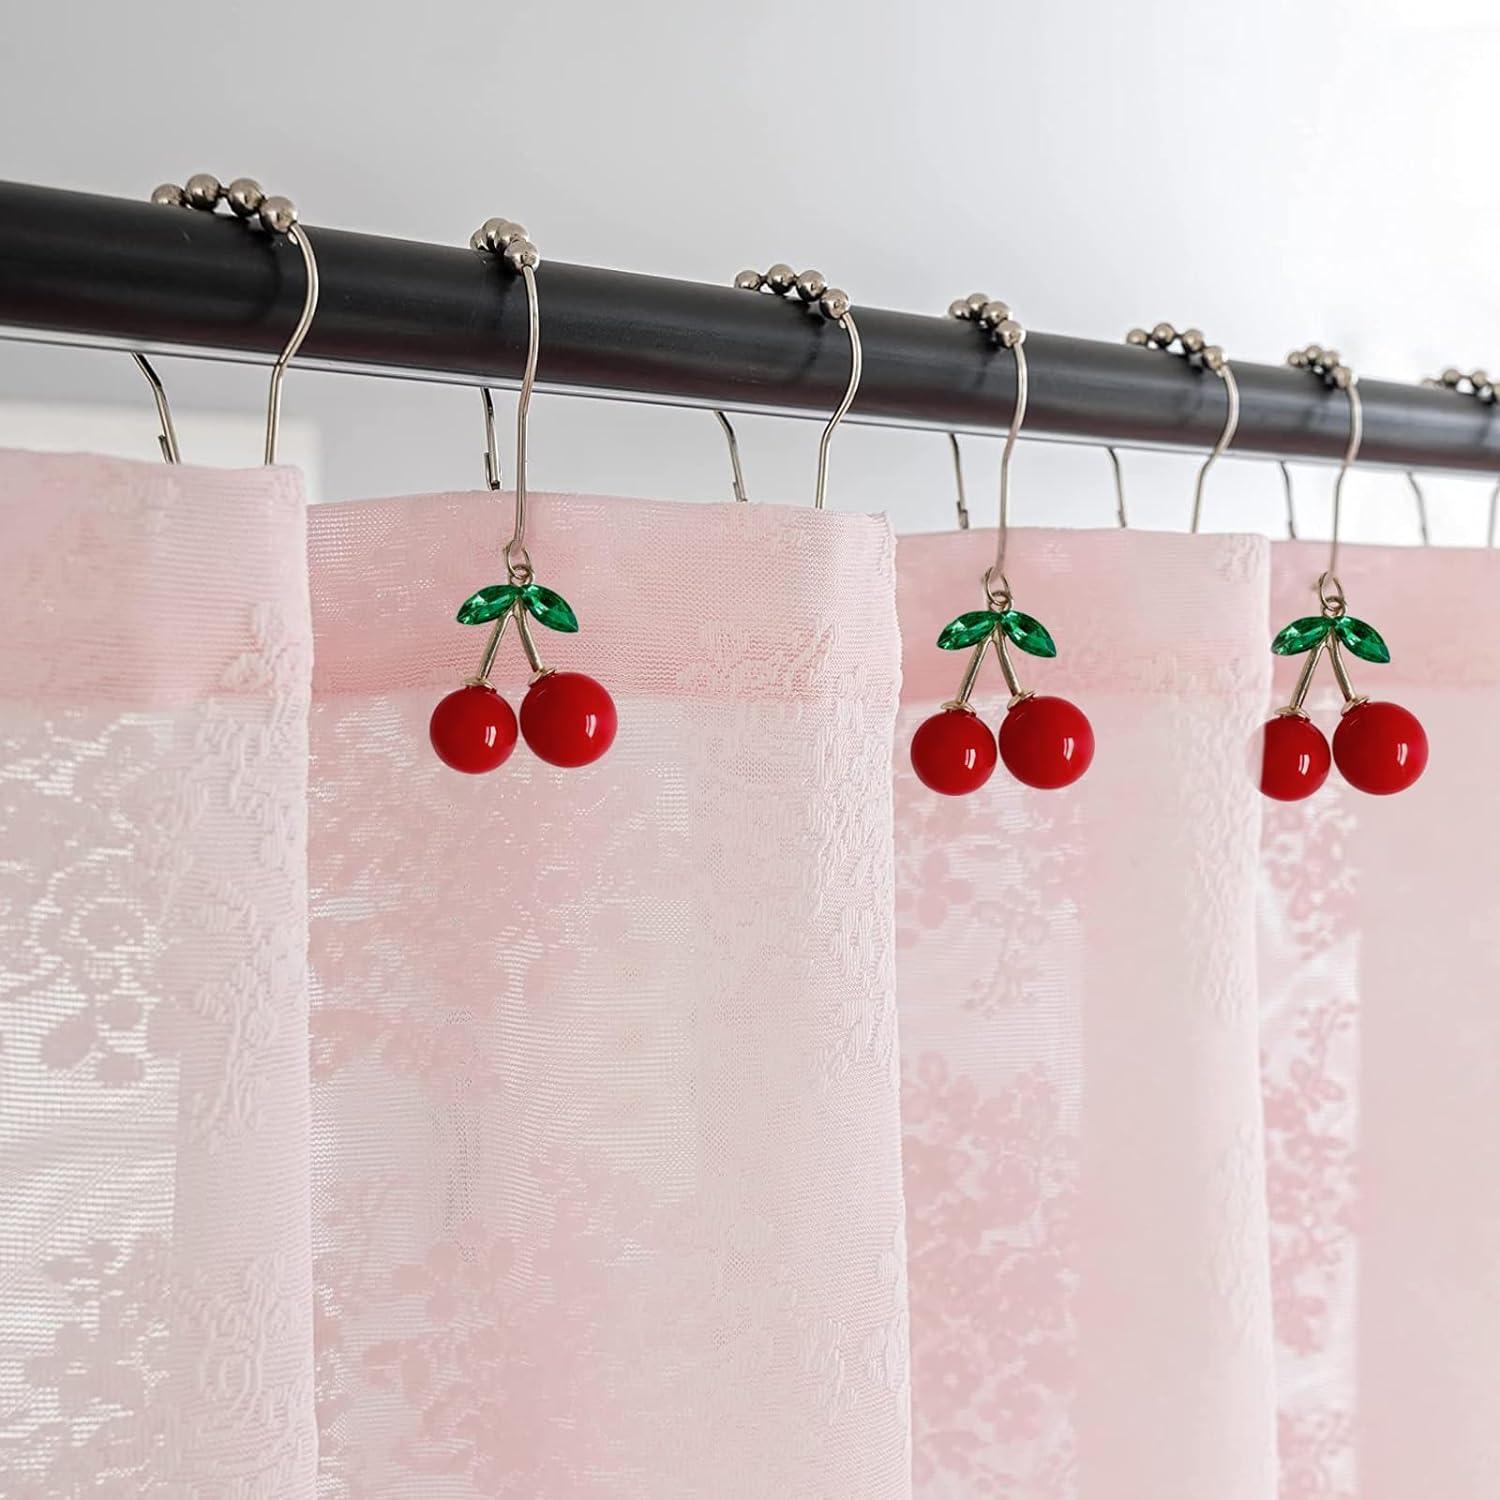 Anillas cortinas Cherry, 10 uds.